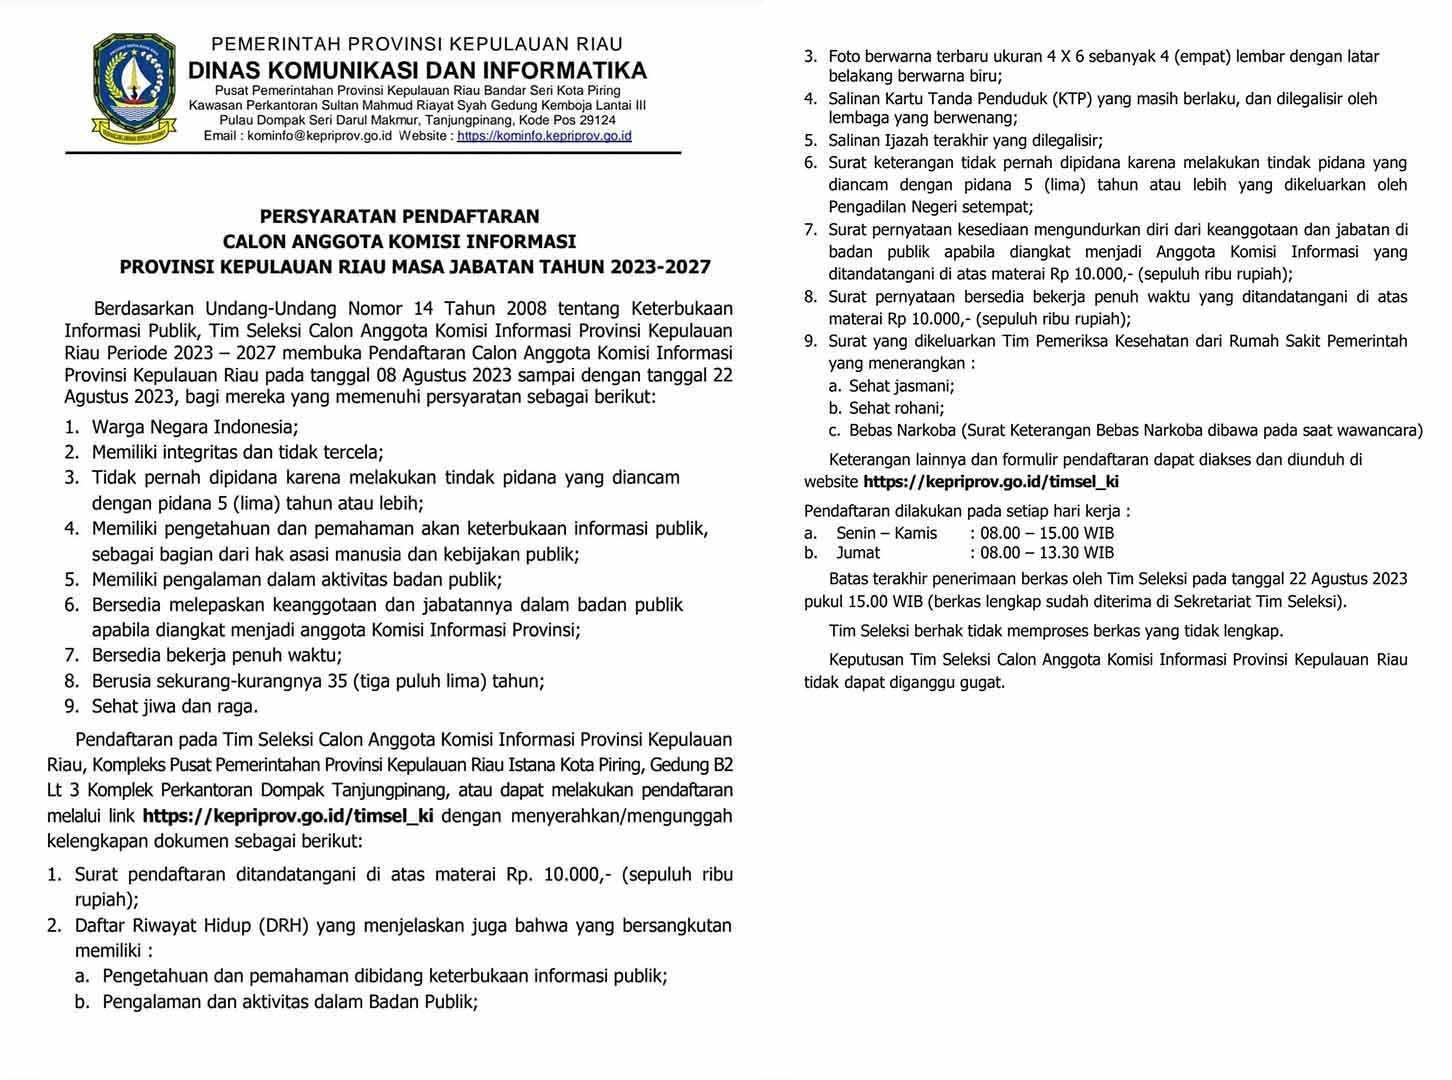 Syarat Pendaftaran Seleksi Anggota Komisi Informasi Provinsi Kepri untuk periode 2023-2027.